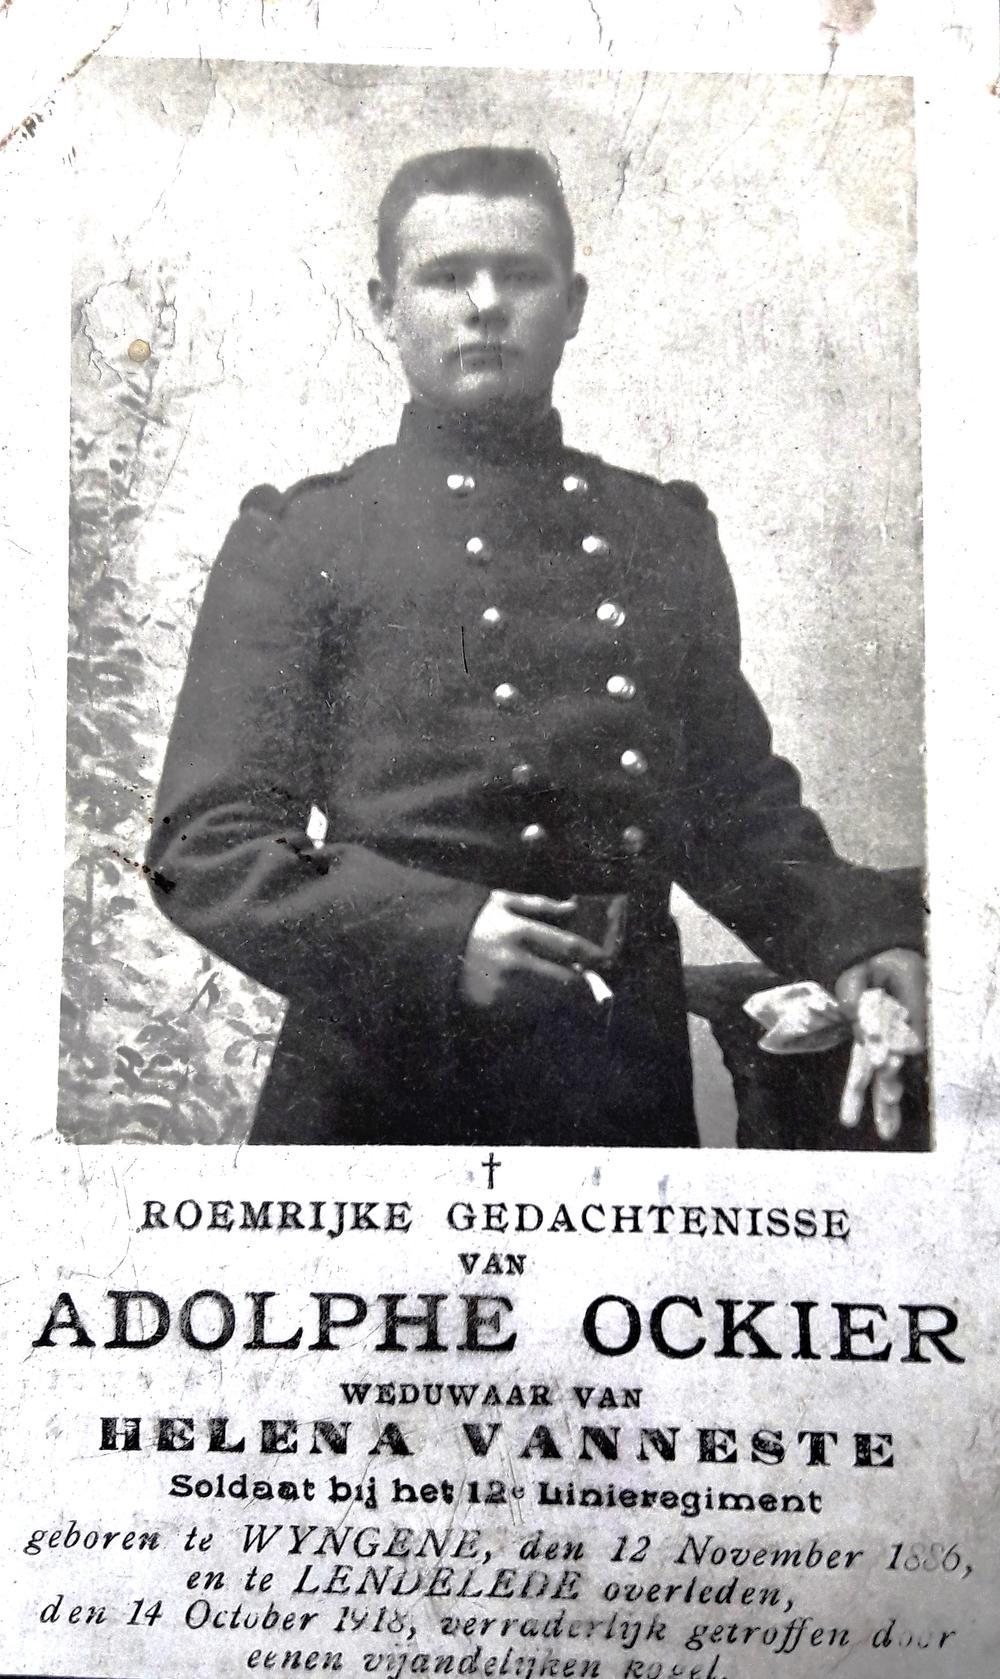 Gedachtenis van Adolphe Ockier. Hij wist niet dat zijn gezinsleden eerder al omkwamen.